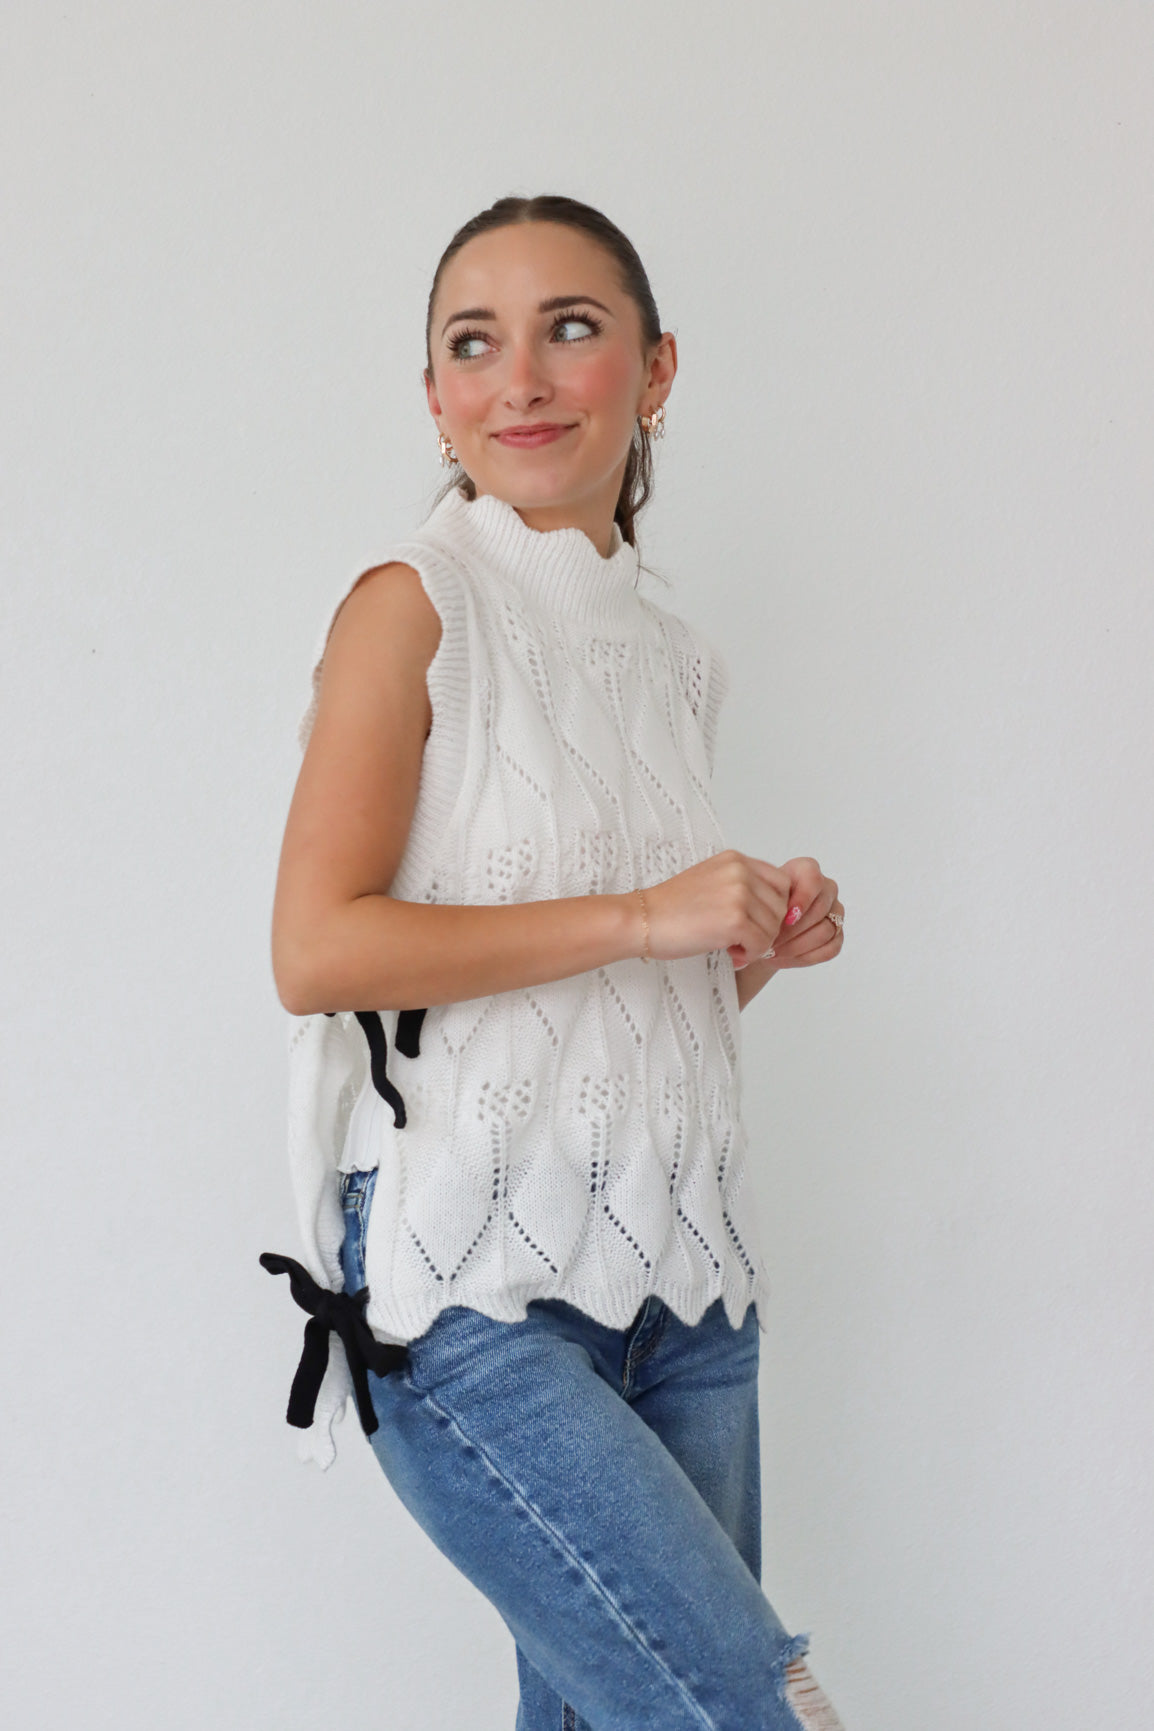 girl wearing white knit top